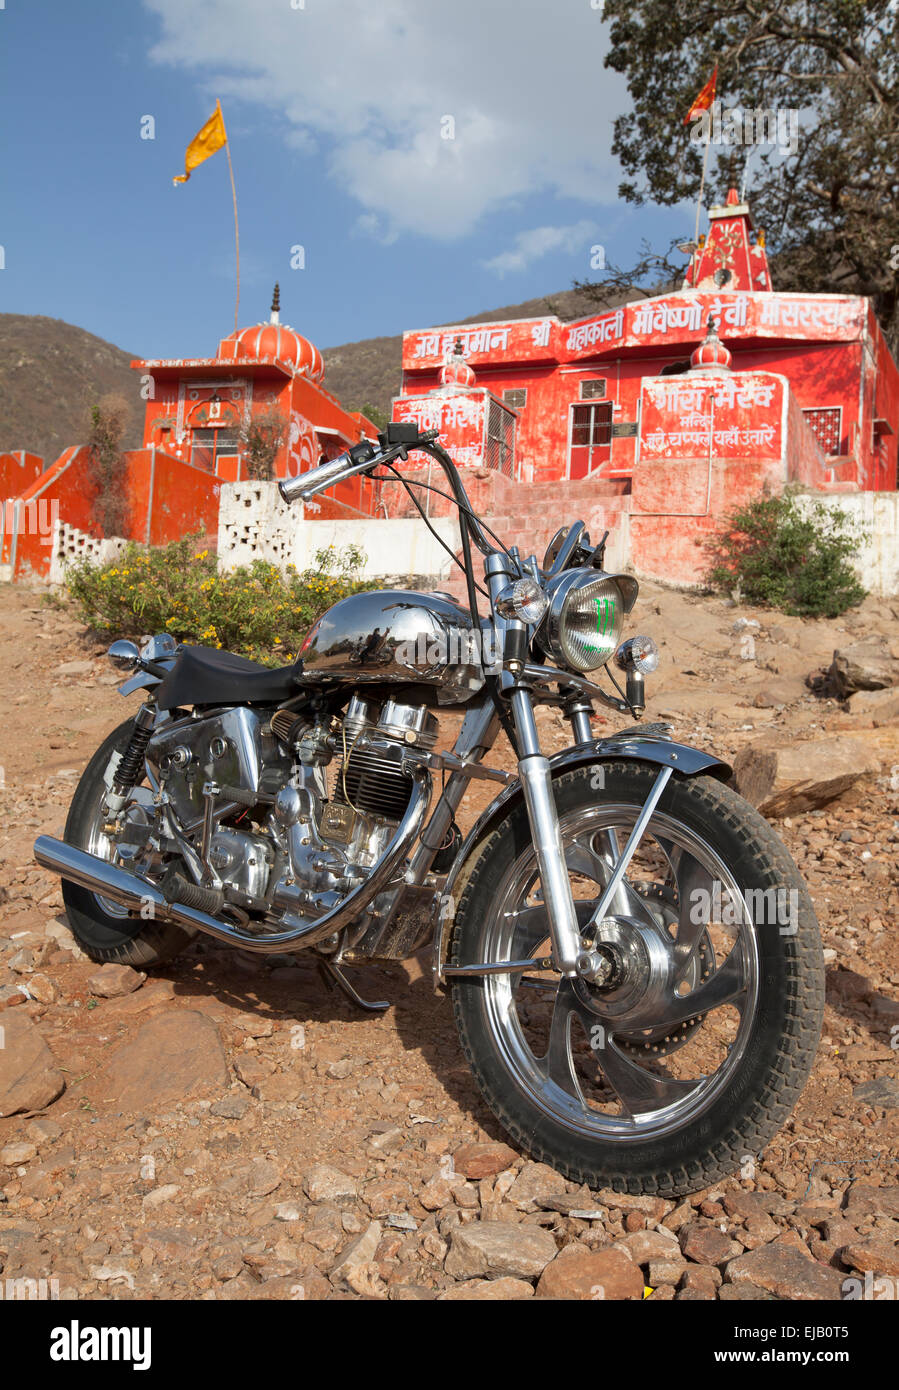 Moto Royal Enfield indienne fabriqués à l'extérieur de temple hindou près  de Pushkar, Rajasthan Photo Stock - Alamy